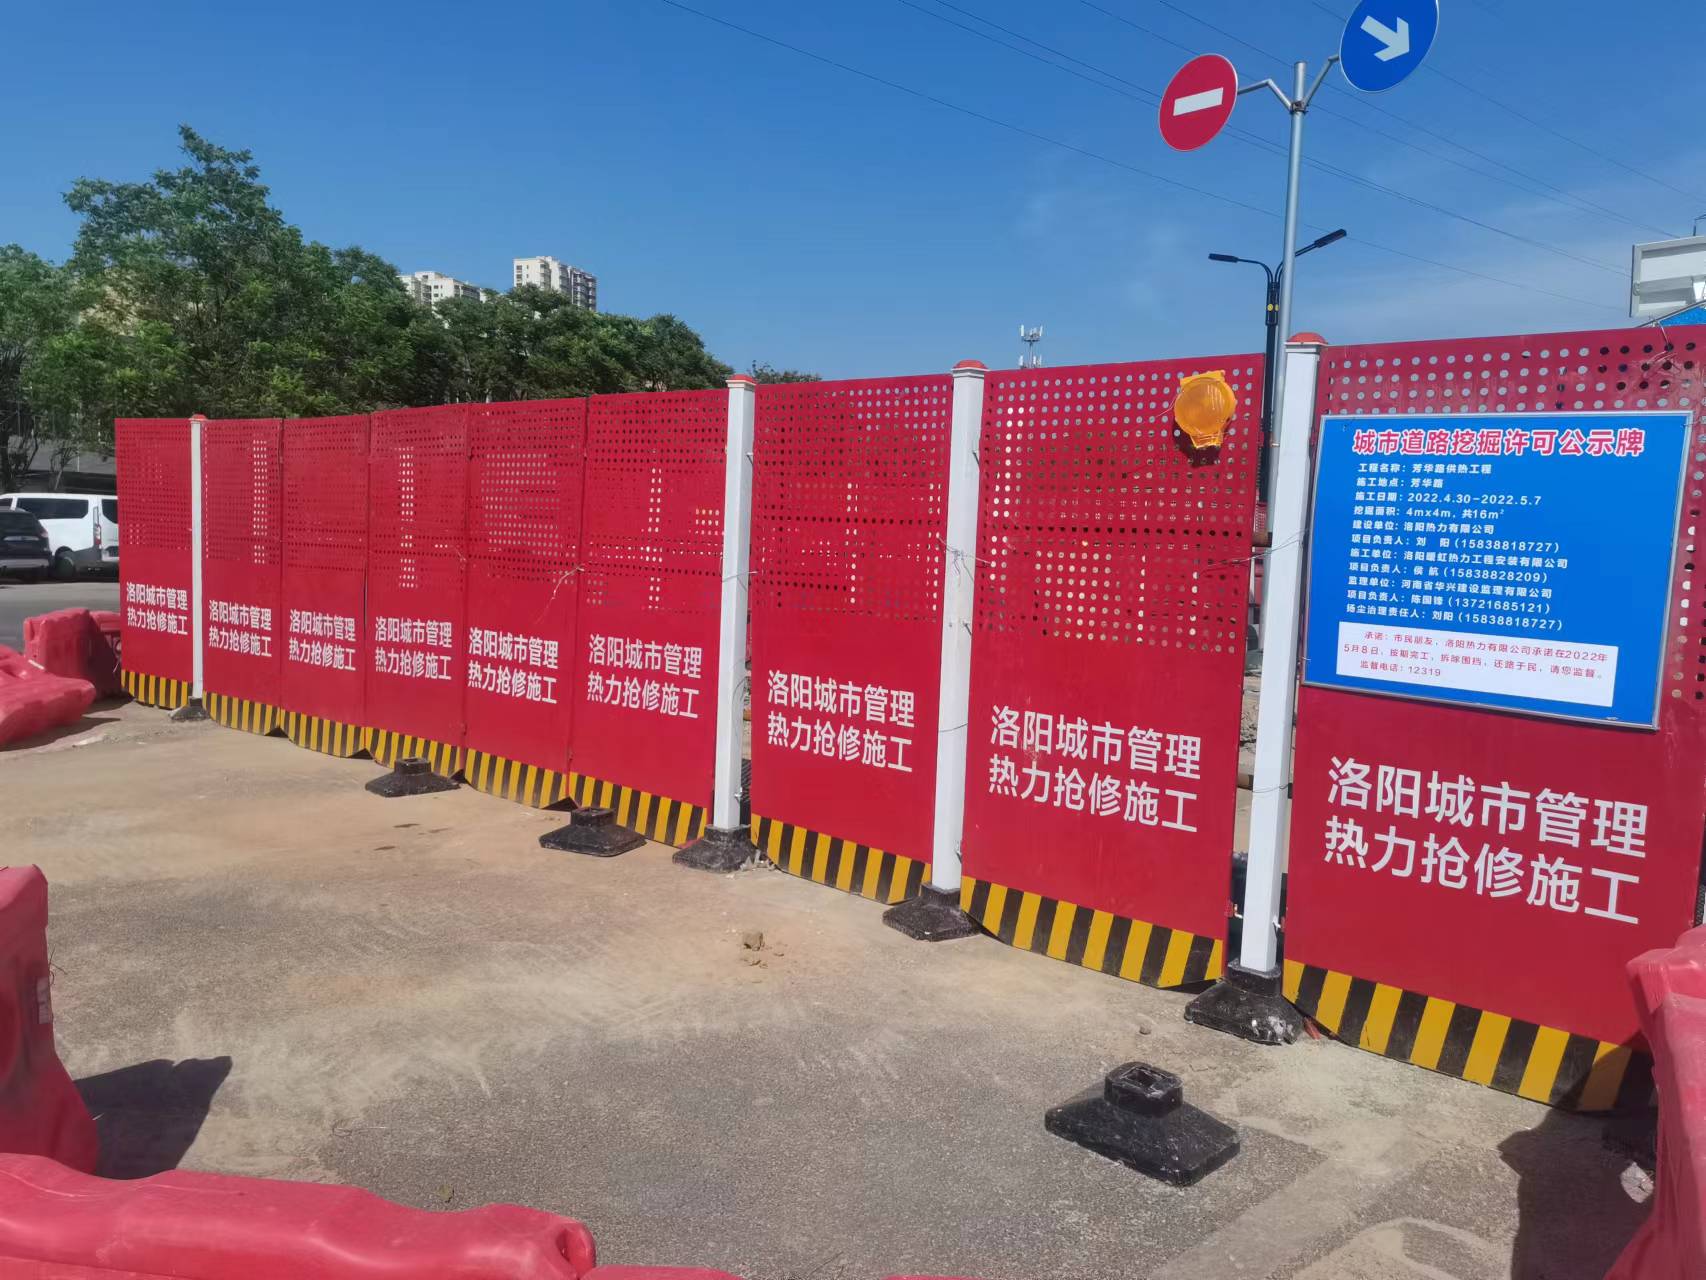 红色/橙色/蓝色 洛阳市政热力管道抢修围挡(图4)